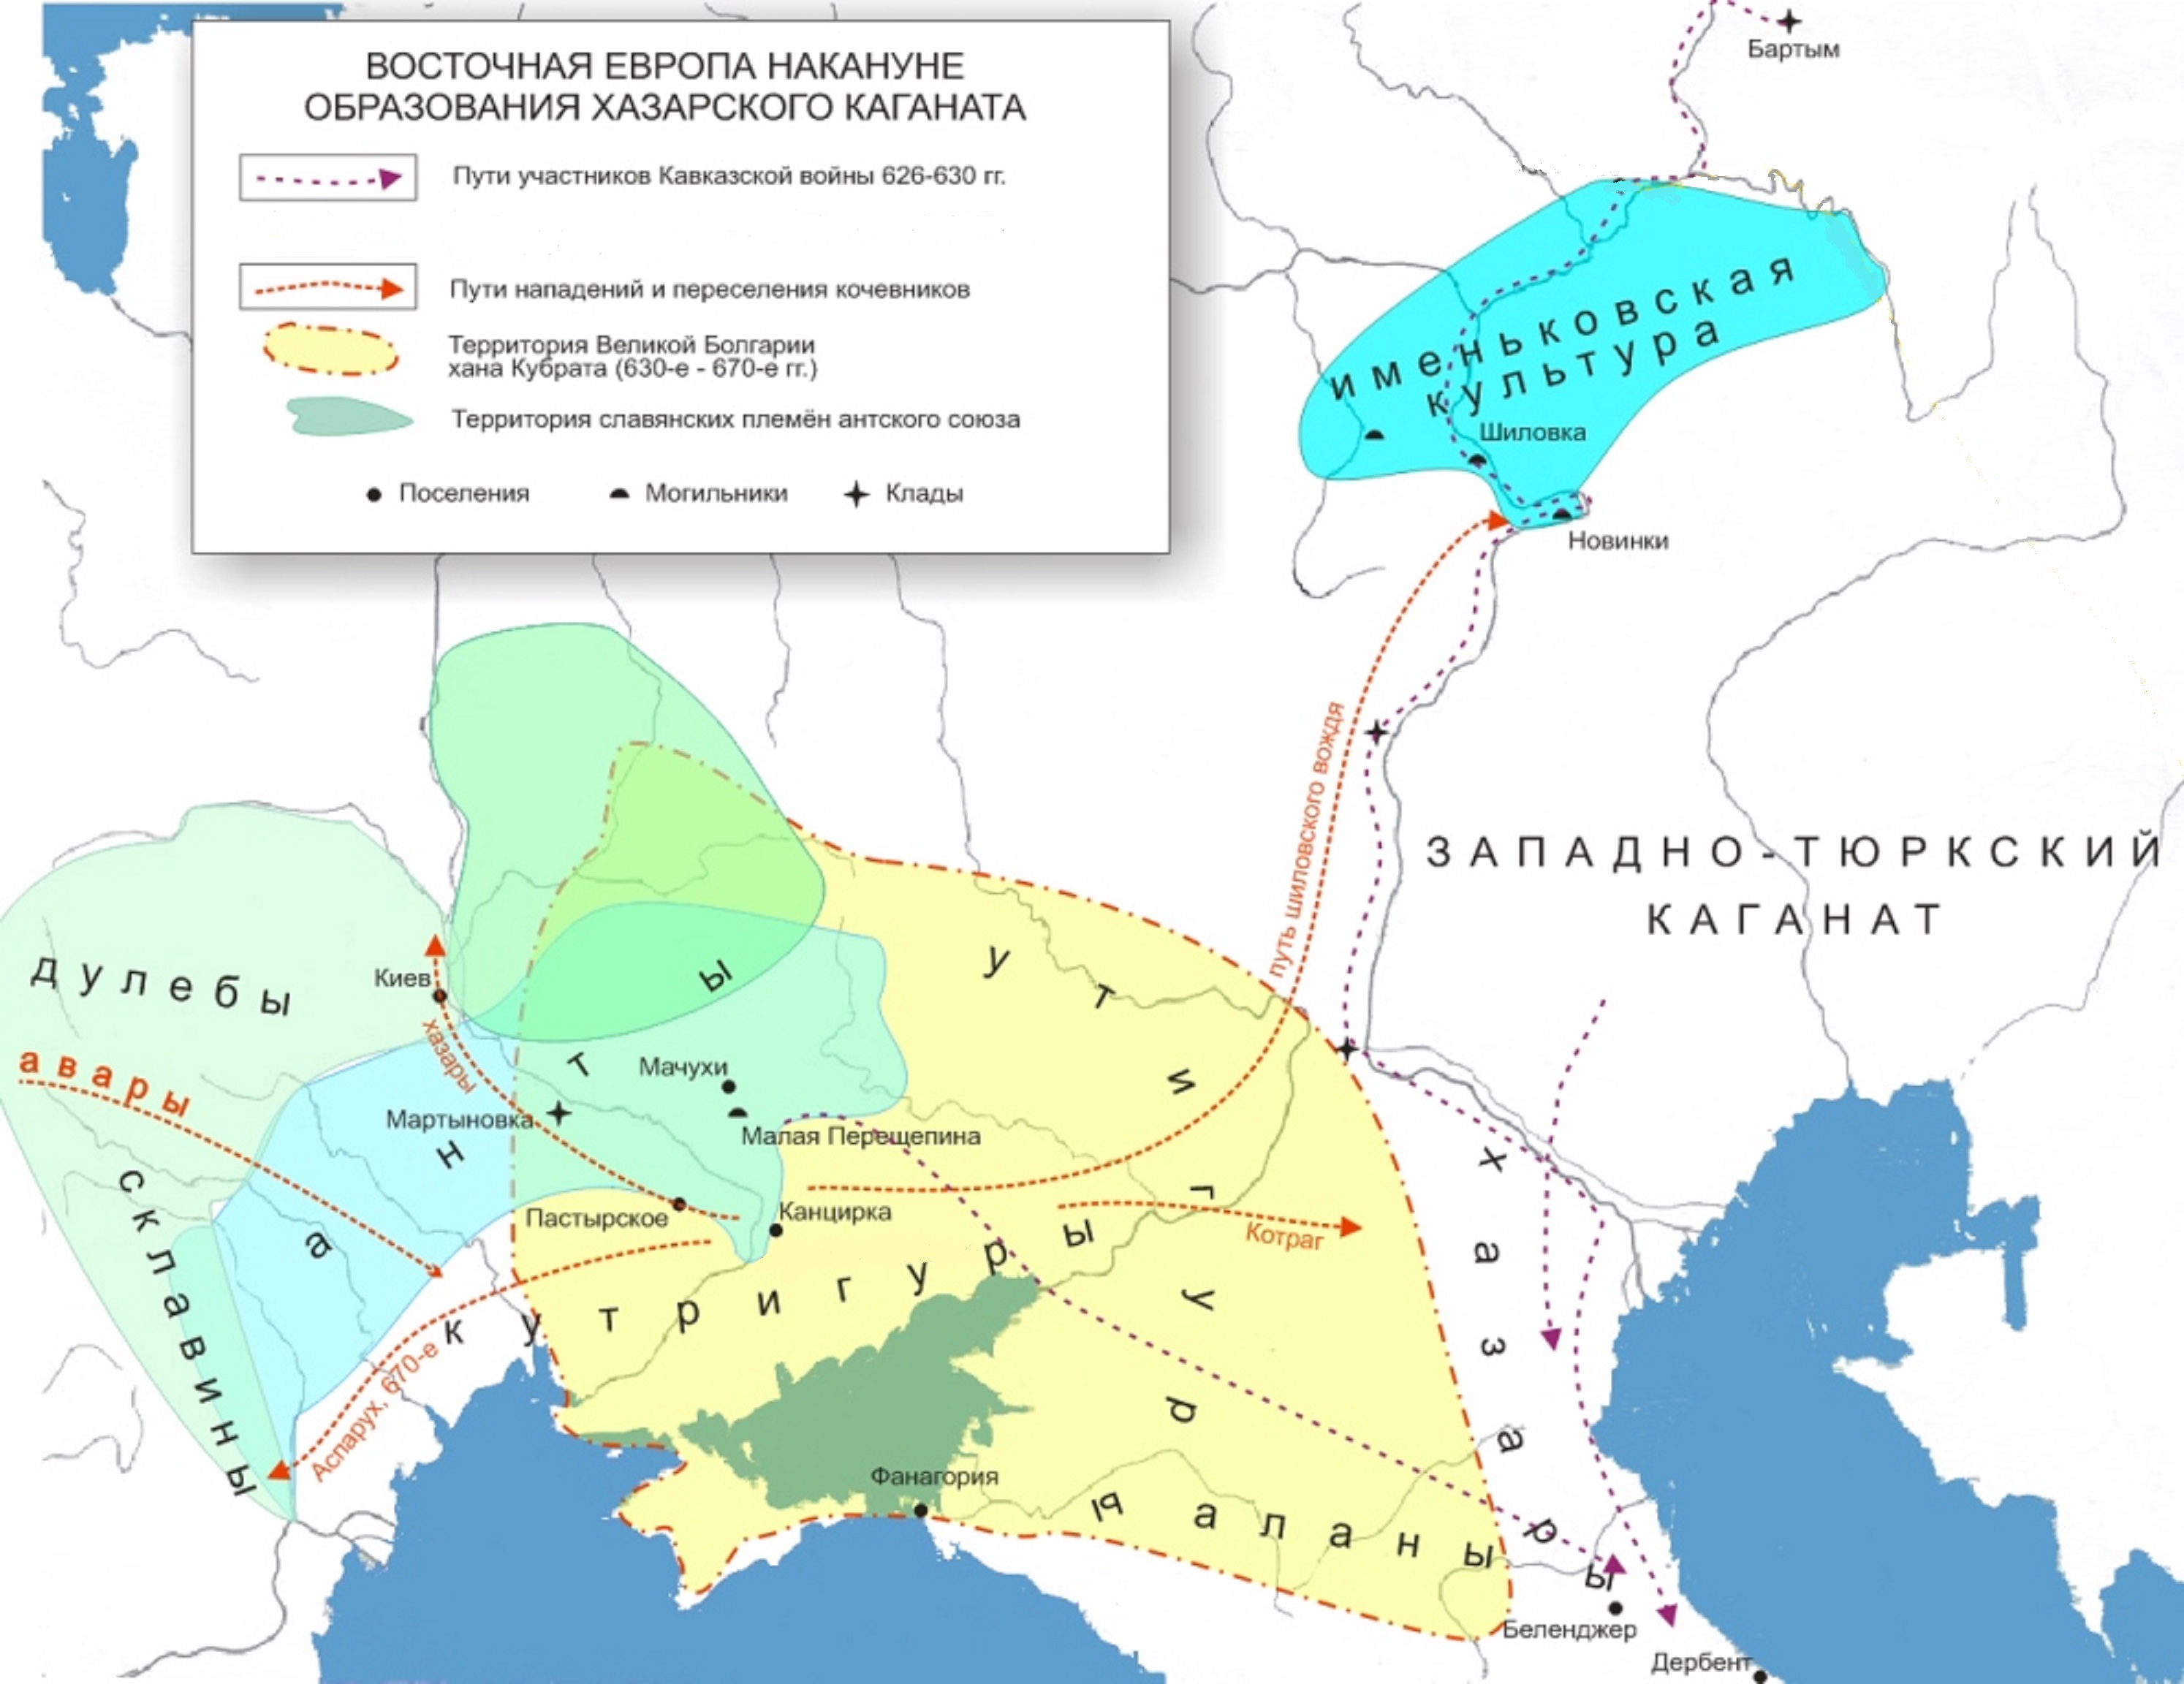 Восточная Европа 7 века. Карта С. Прозорова (с незначительными правками) 